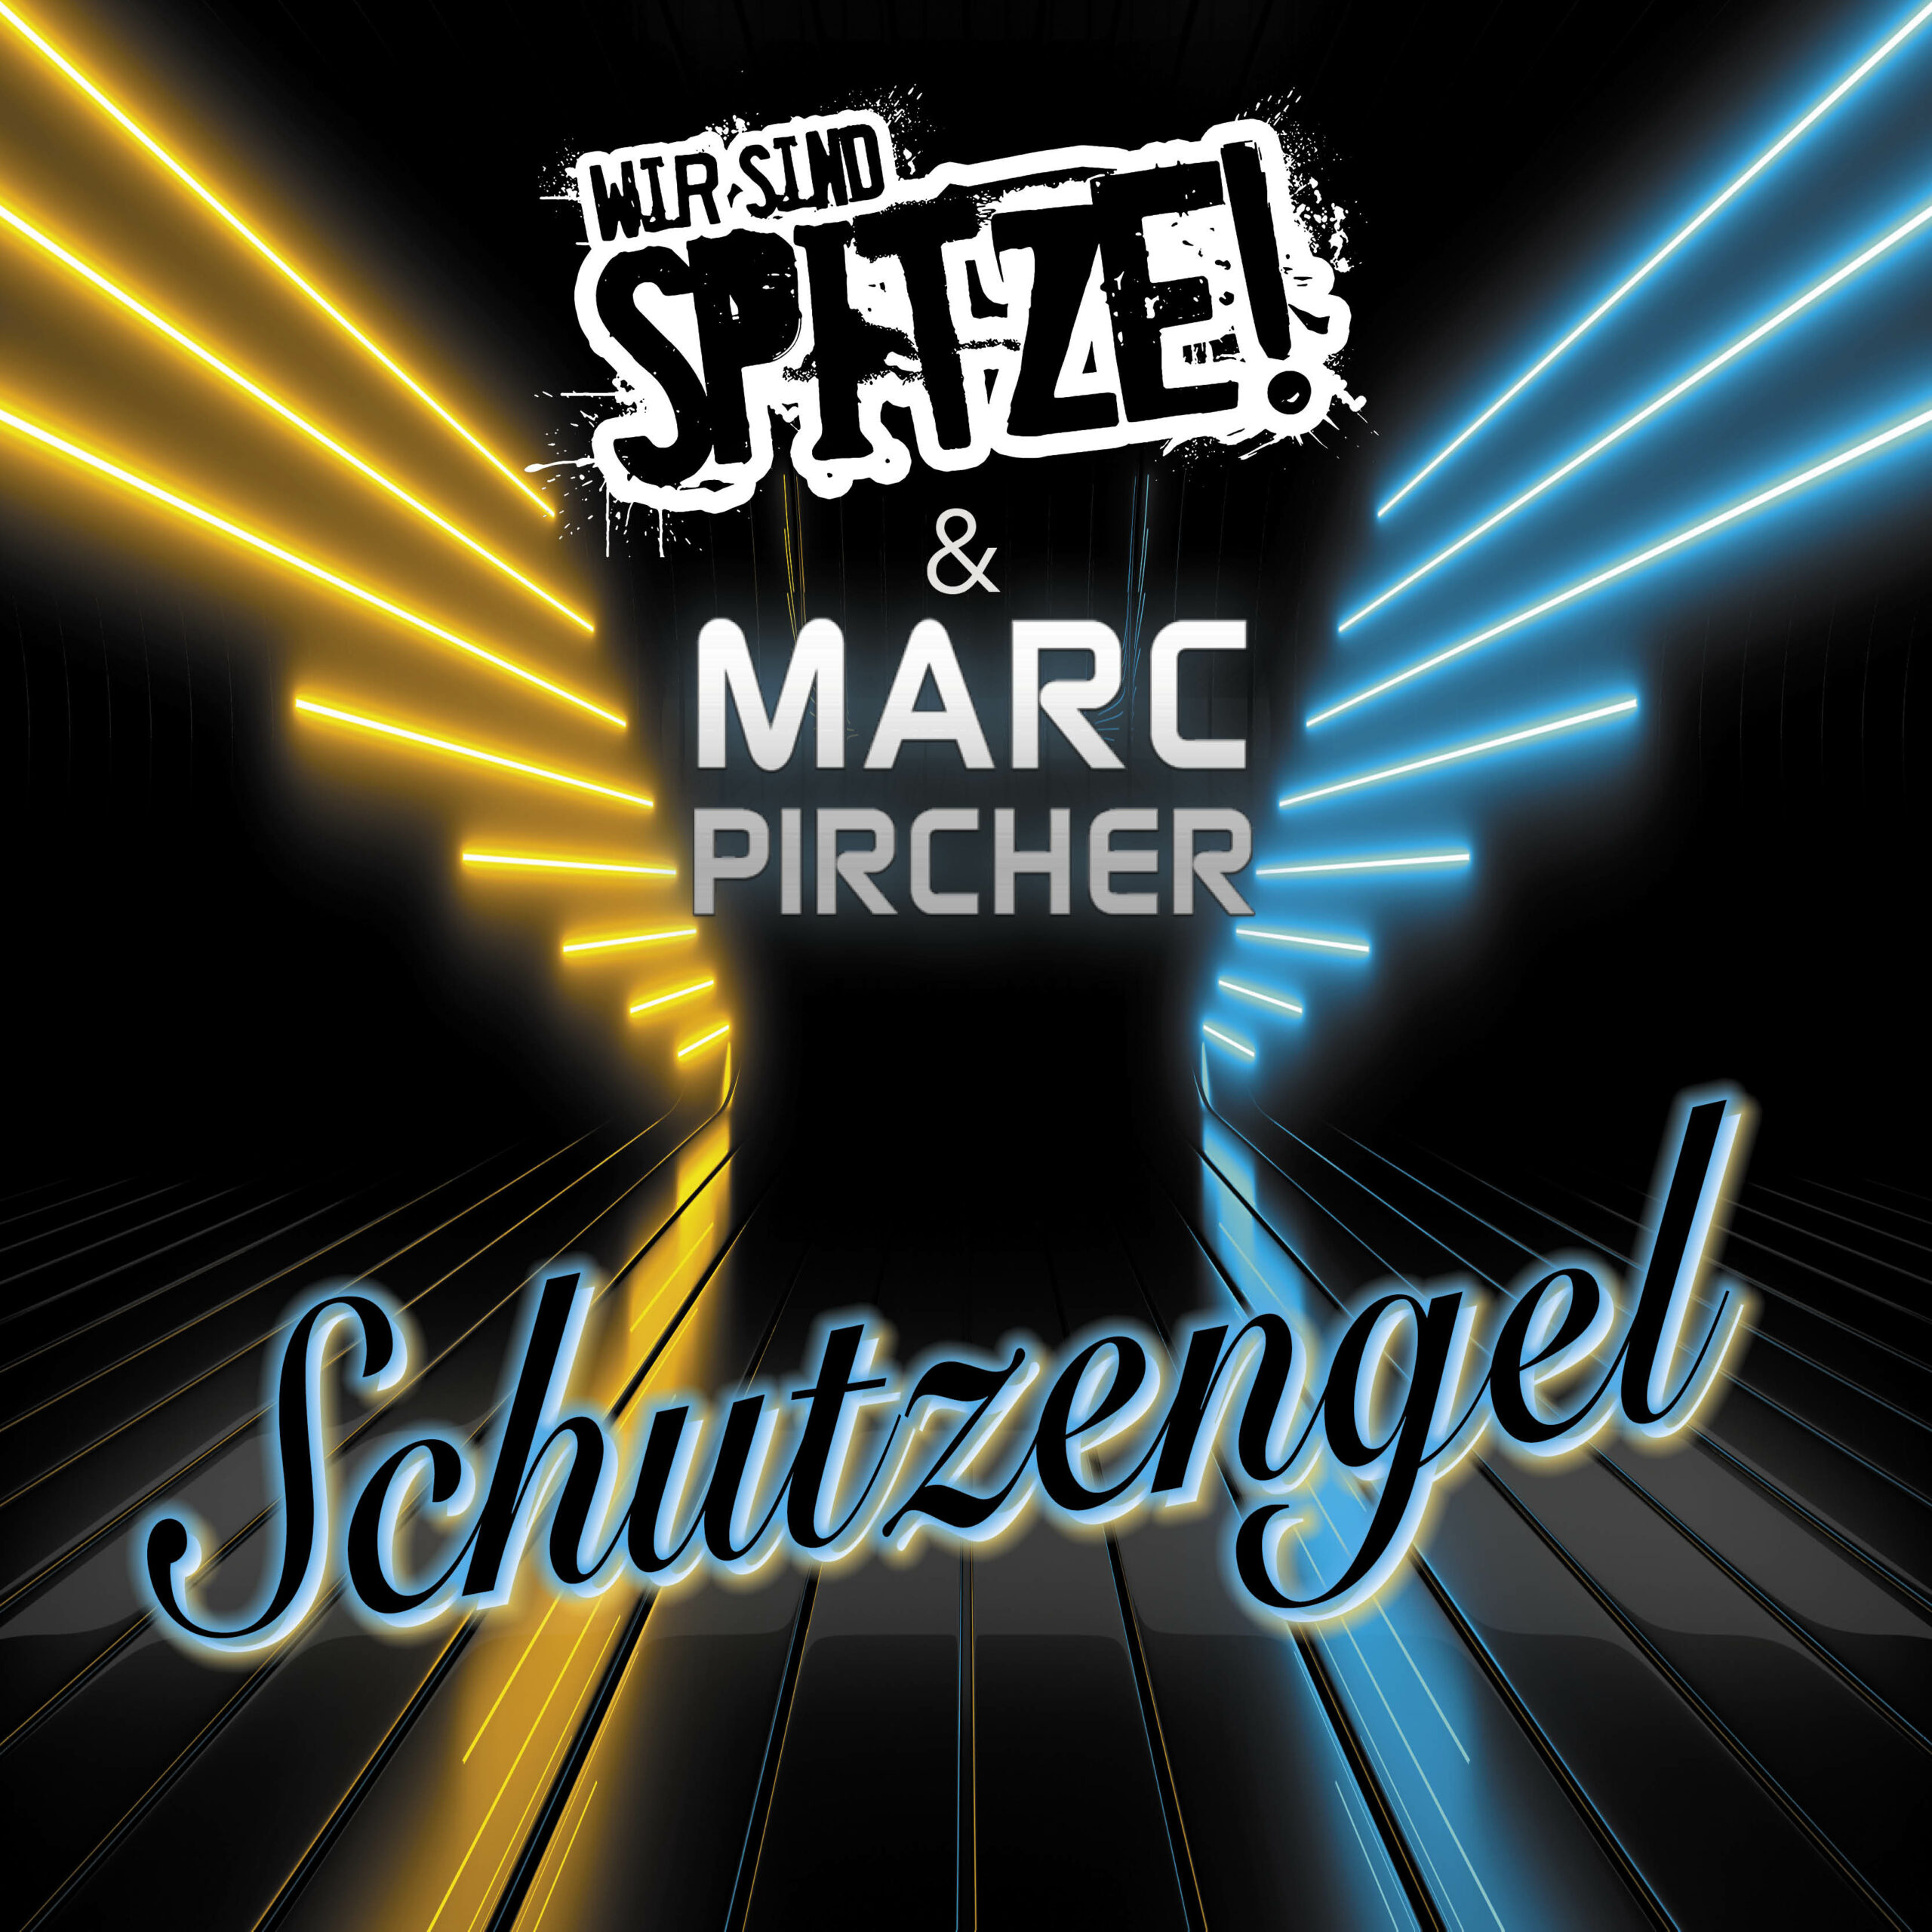 Tanzbarer Partyschlager: Marc Pircher & Wir sind SPITZE! mit Schutzengel